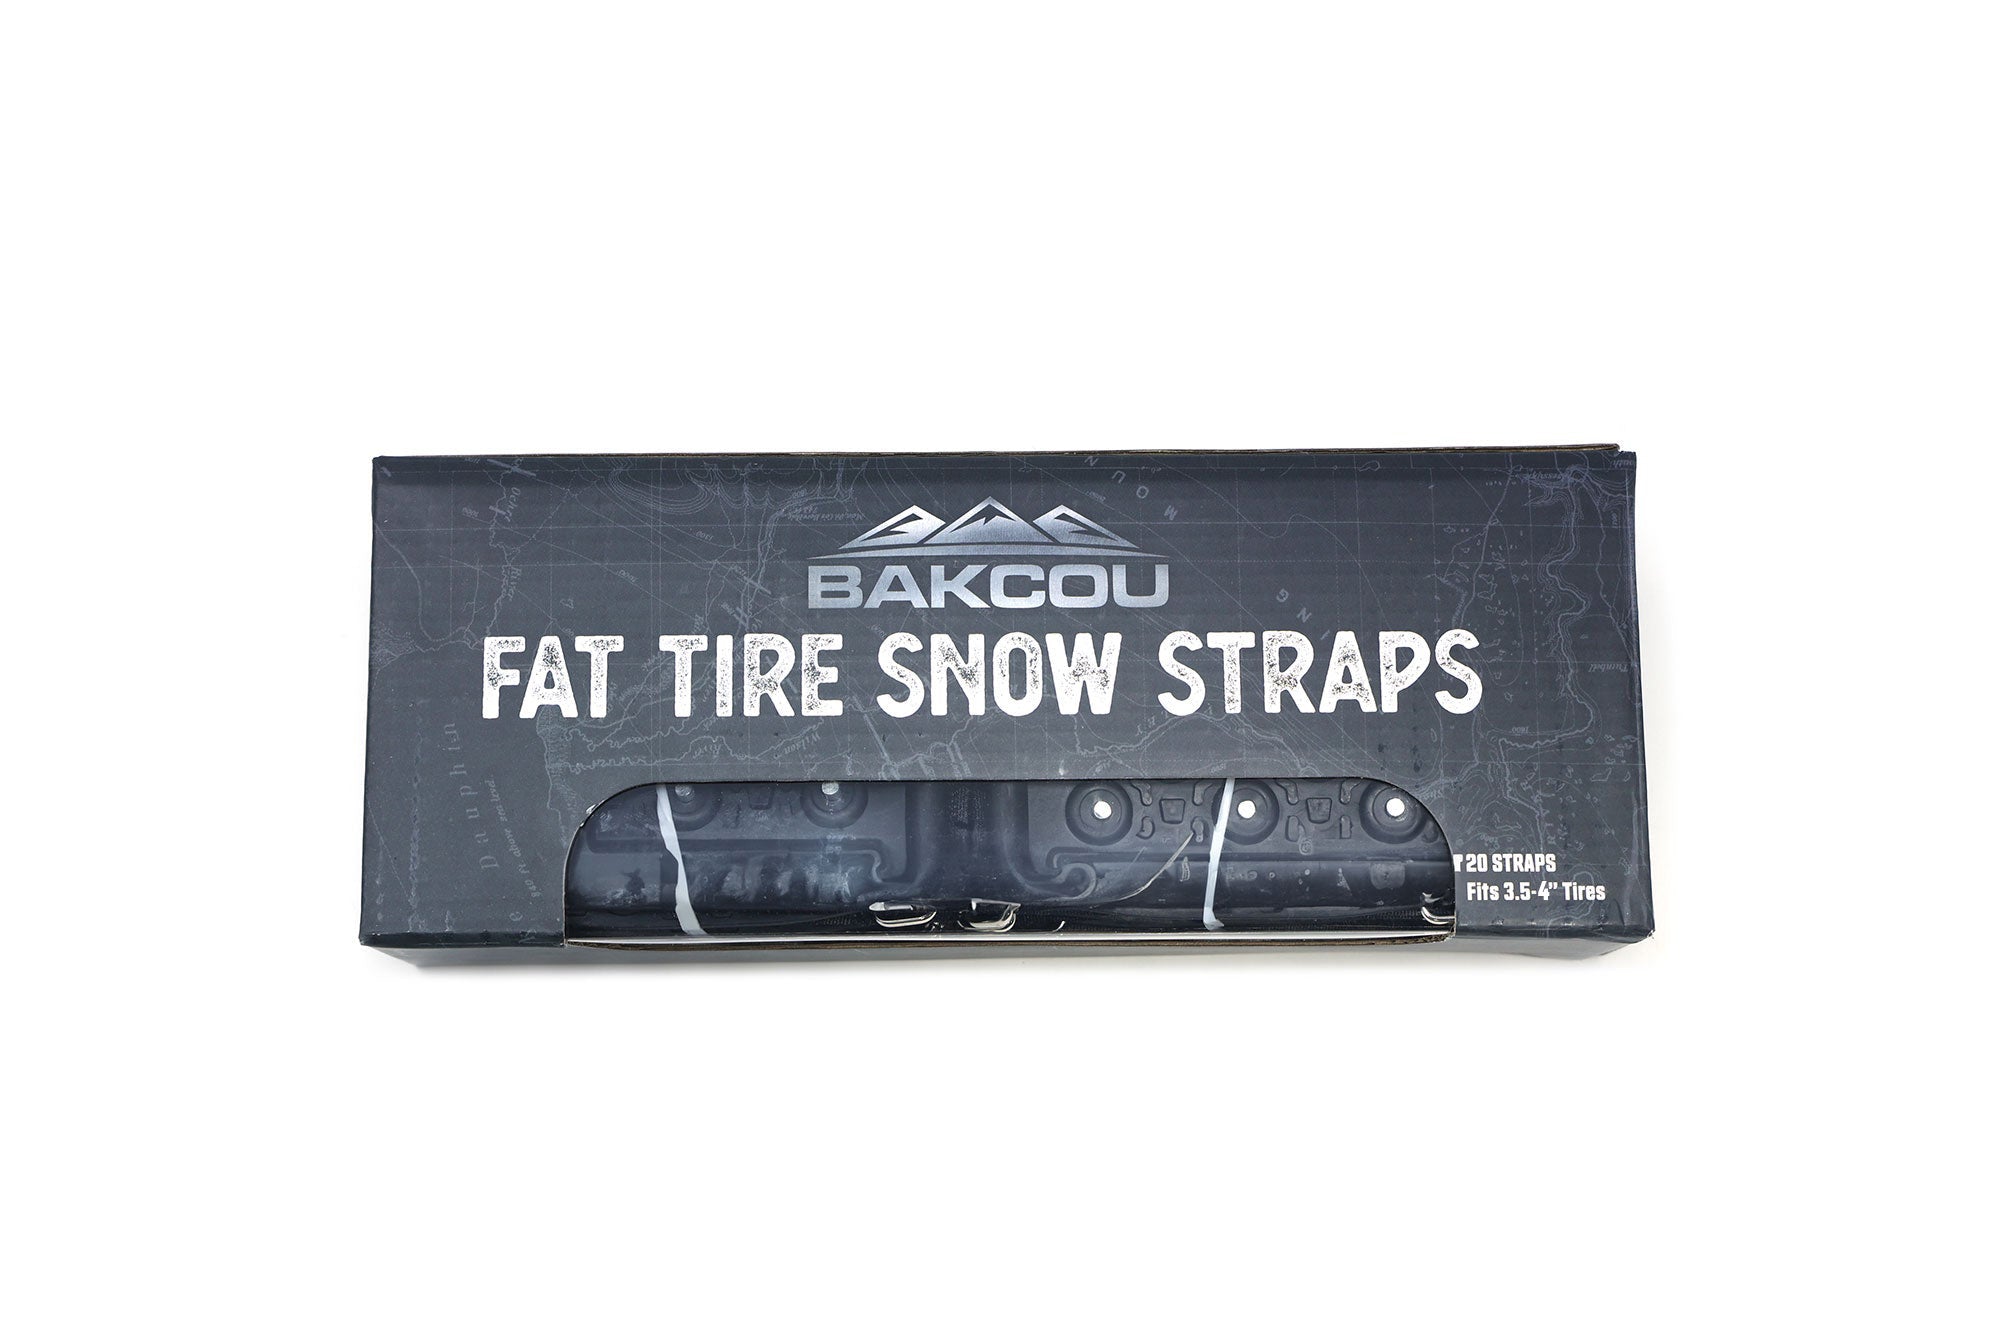 Fat Tire Snow Straps - Bakcou